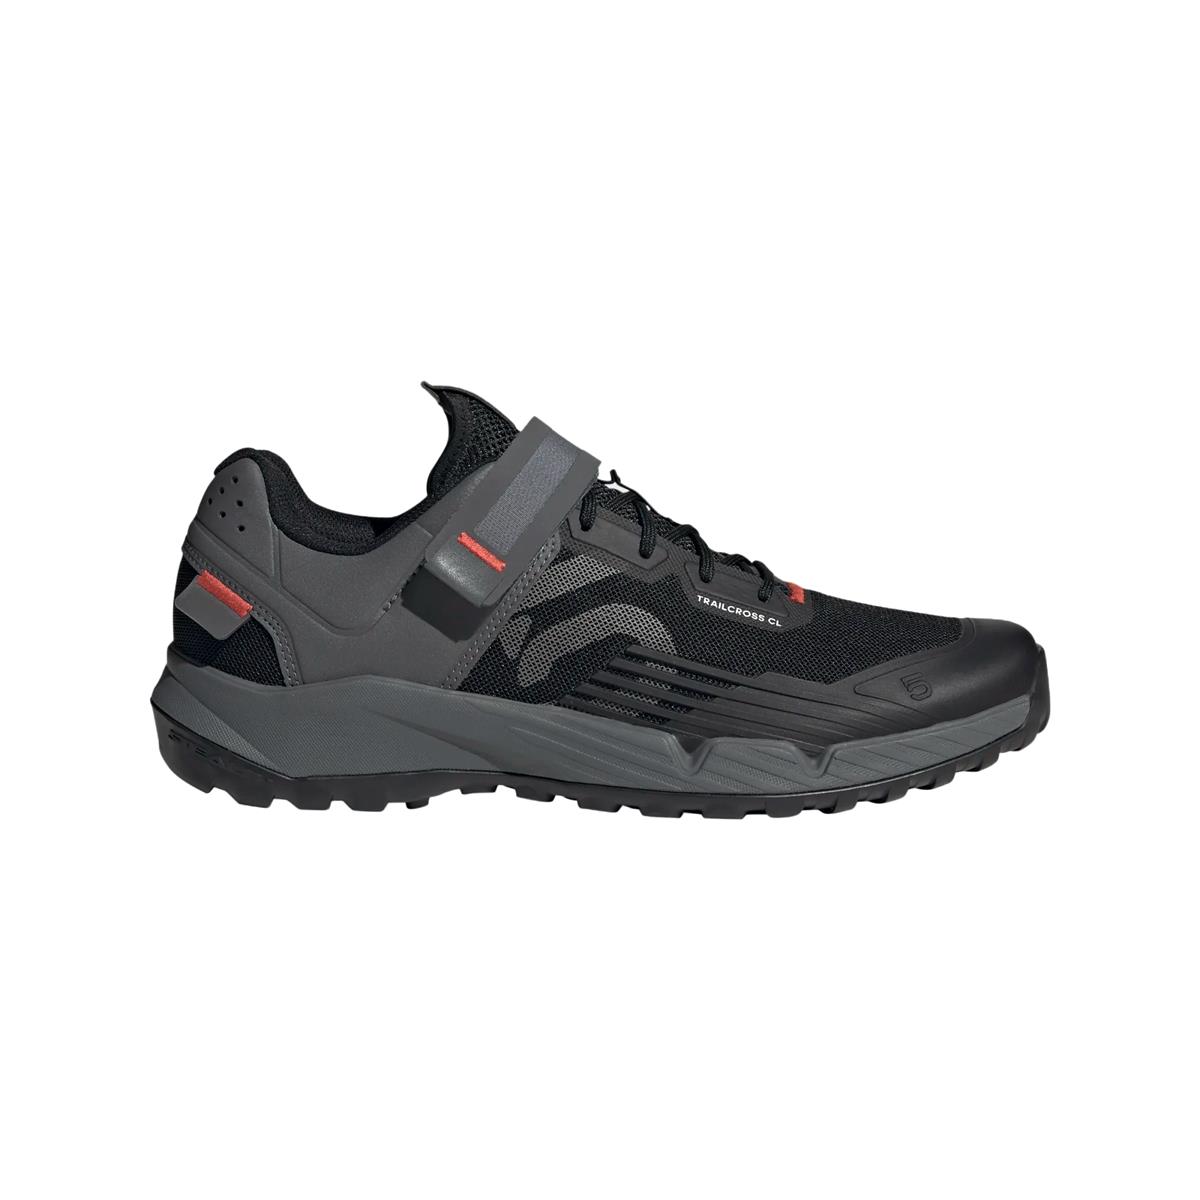 Clip 5.10 Trailcross MTB Shoes Black/Grey Size 40